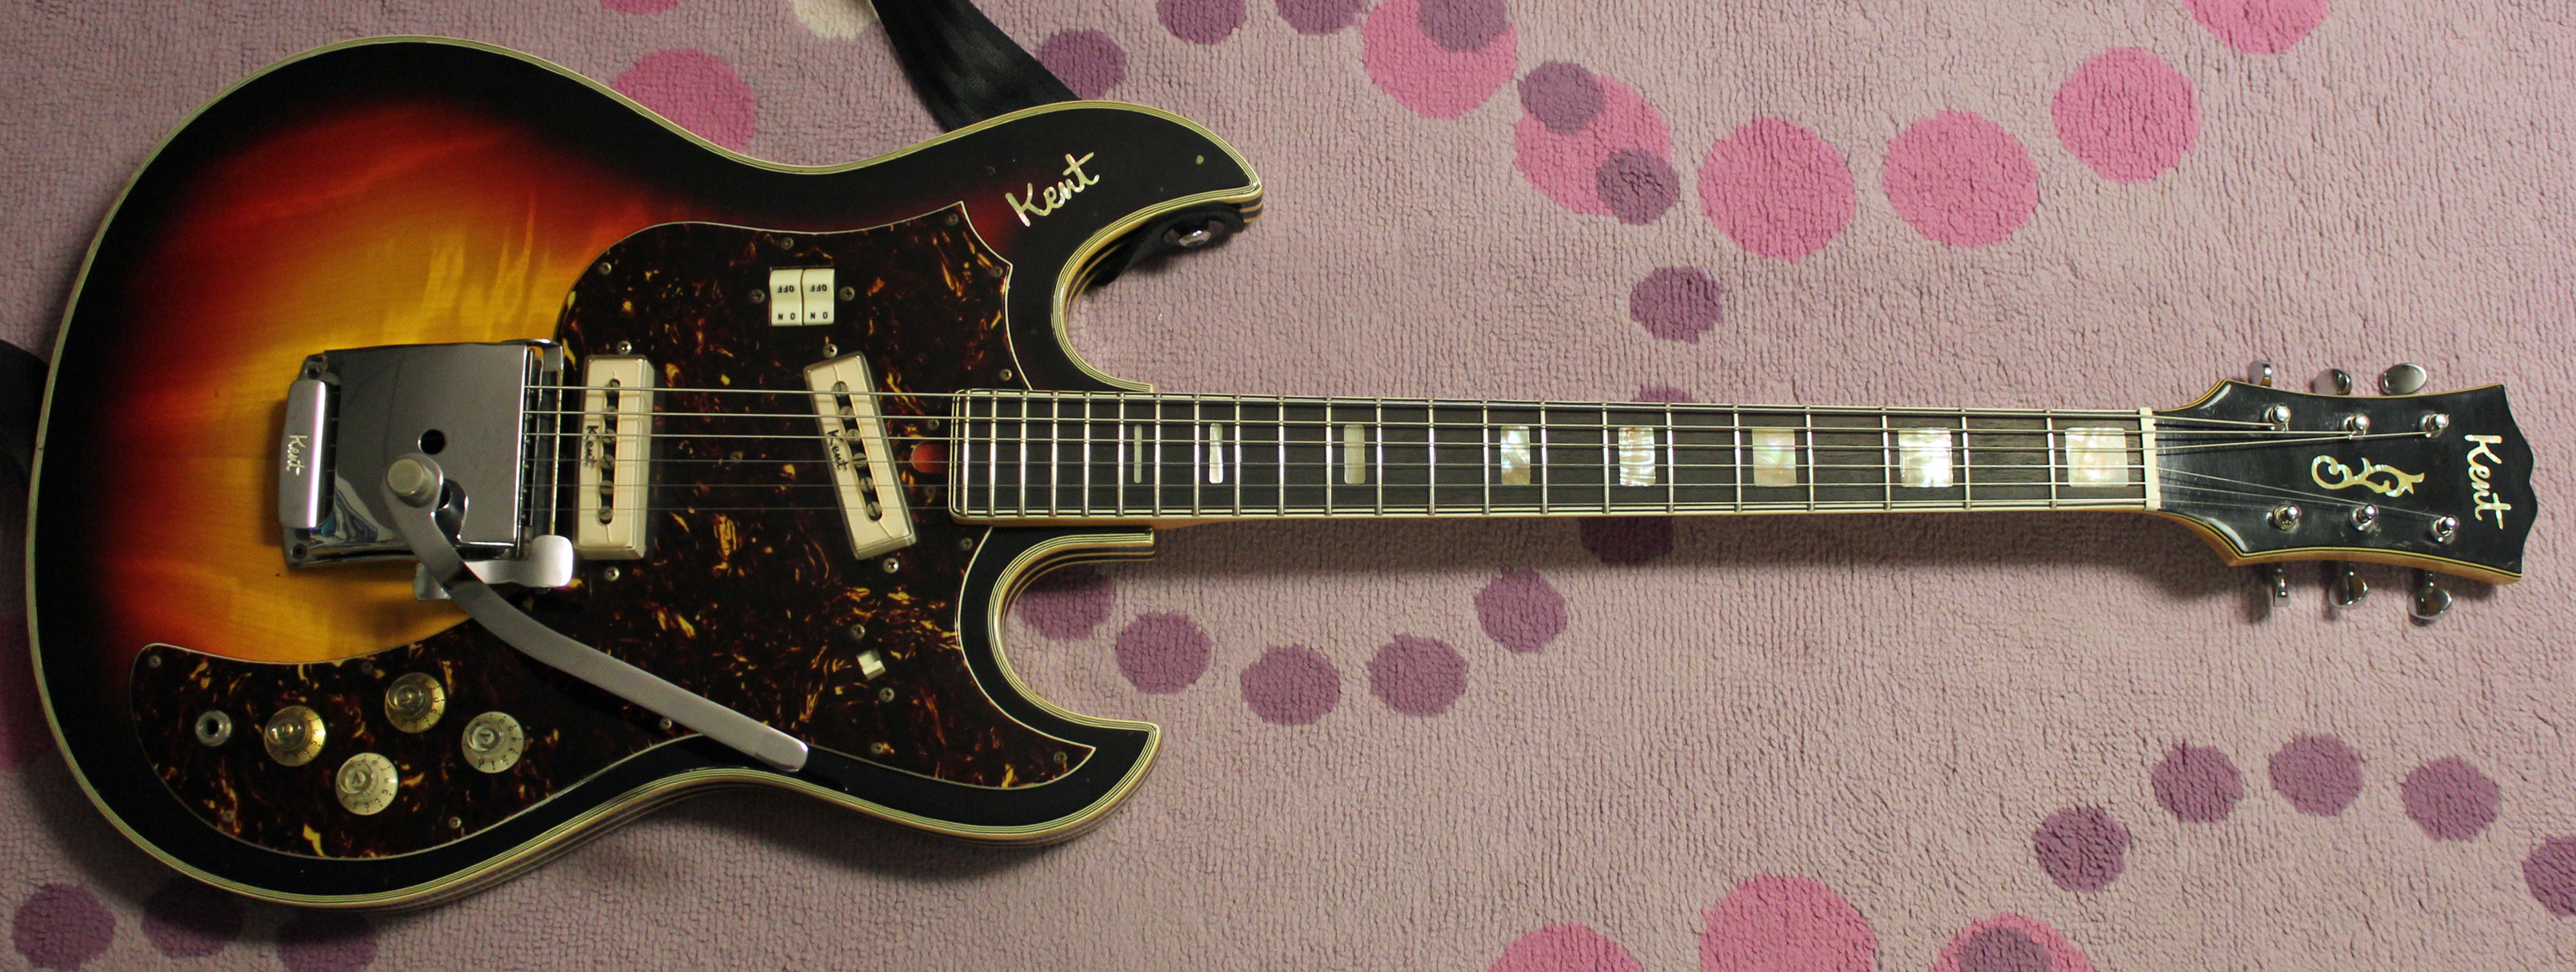 Kent Electric Guitars